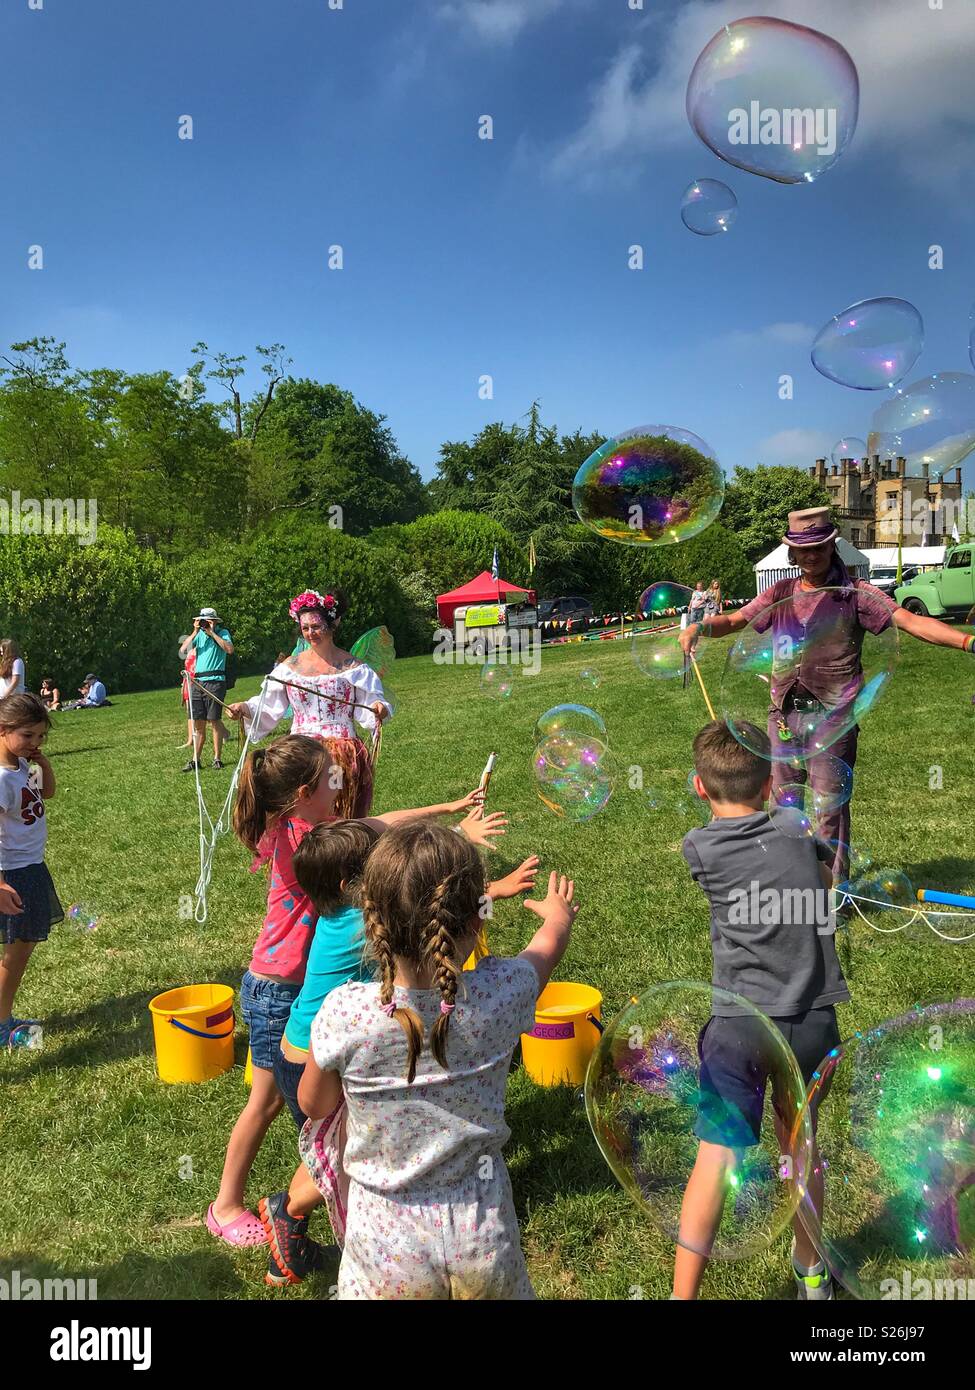 Bubbleman créer des bulles de savon, et les enfants d'essayer de les faire éclater, le château de Sherborne Country Fair, Sherborne, Dorset, Angleterre Banque D'Images